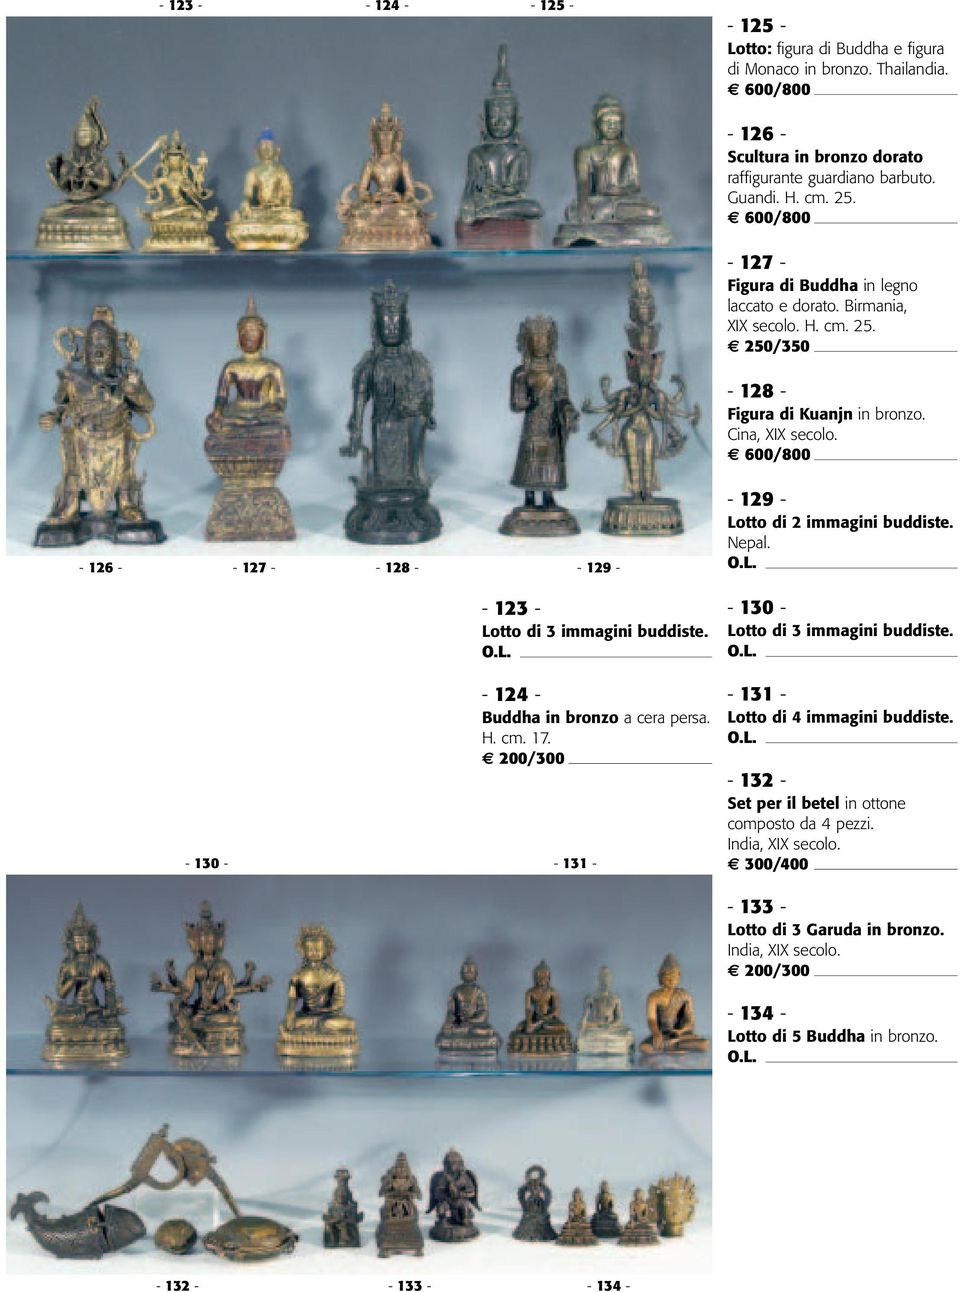 Cina, - 126 - - 127 - - 128 - - 129 - - 129 - Lotto di 2 immagini buddiste. Nepal. - 123 - Lotto di 3 immagini buddiste. - 130 - Lotto di 3 immagini buddiste.